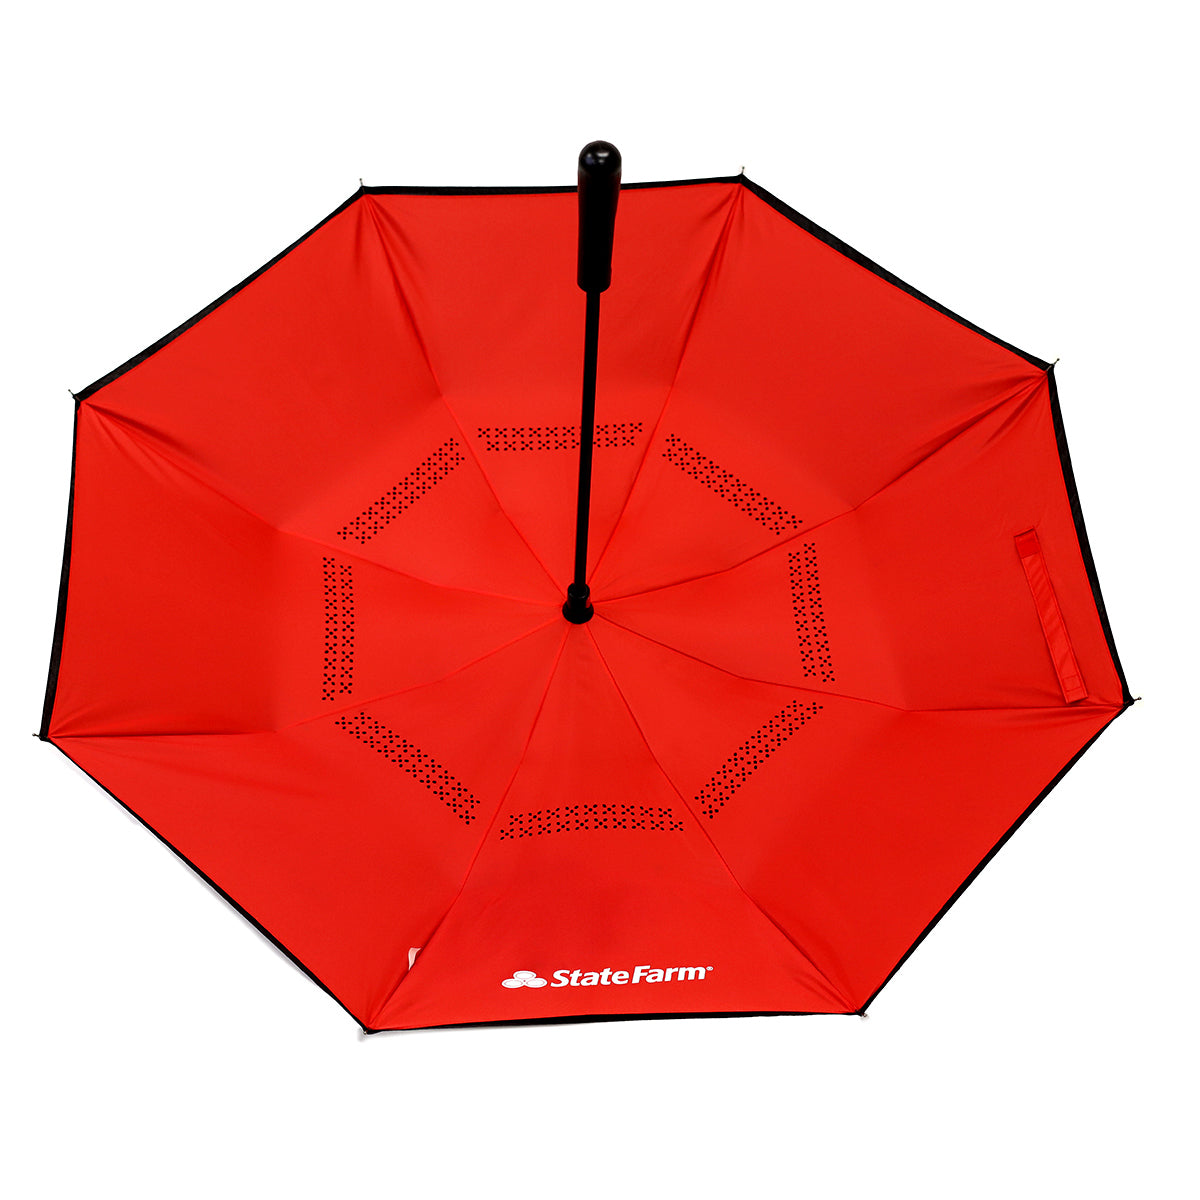 48" Inversion Umbrella